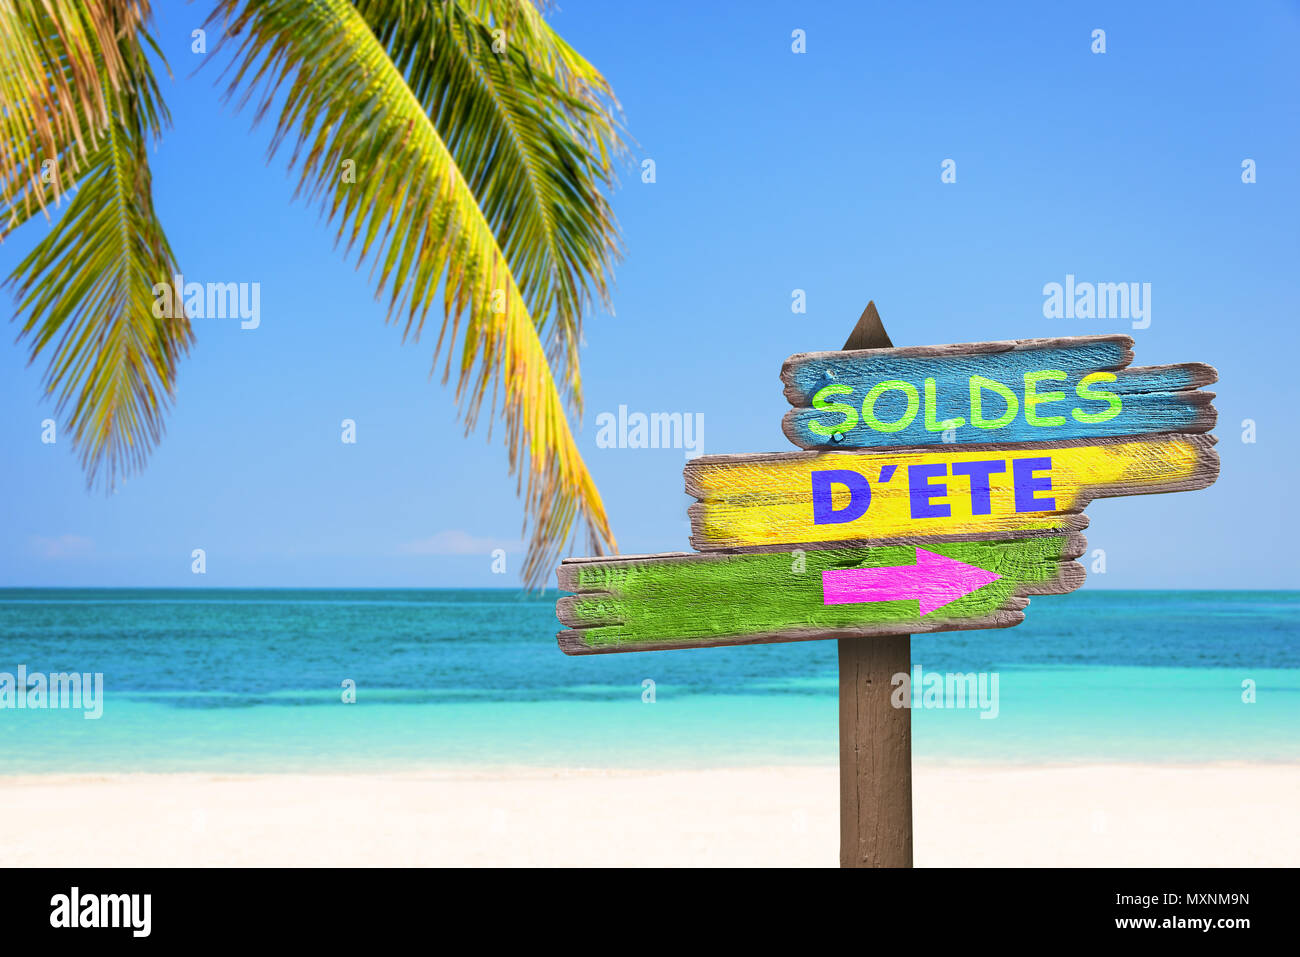 Soldes d'ete (es decir, Oferta de verano en francés) escrito en madera color pastel señales de dirección, la playa y la palmera antecedentes Foto de stock